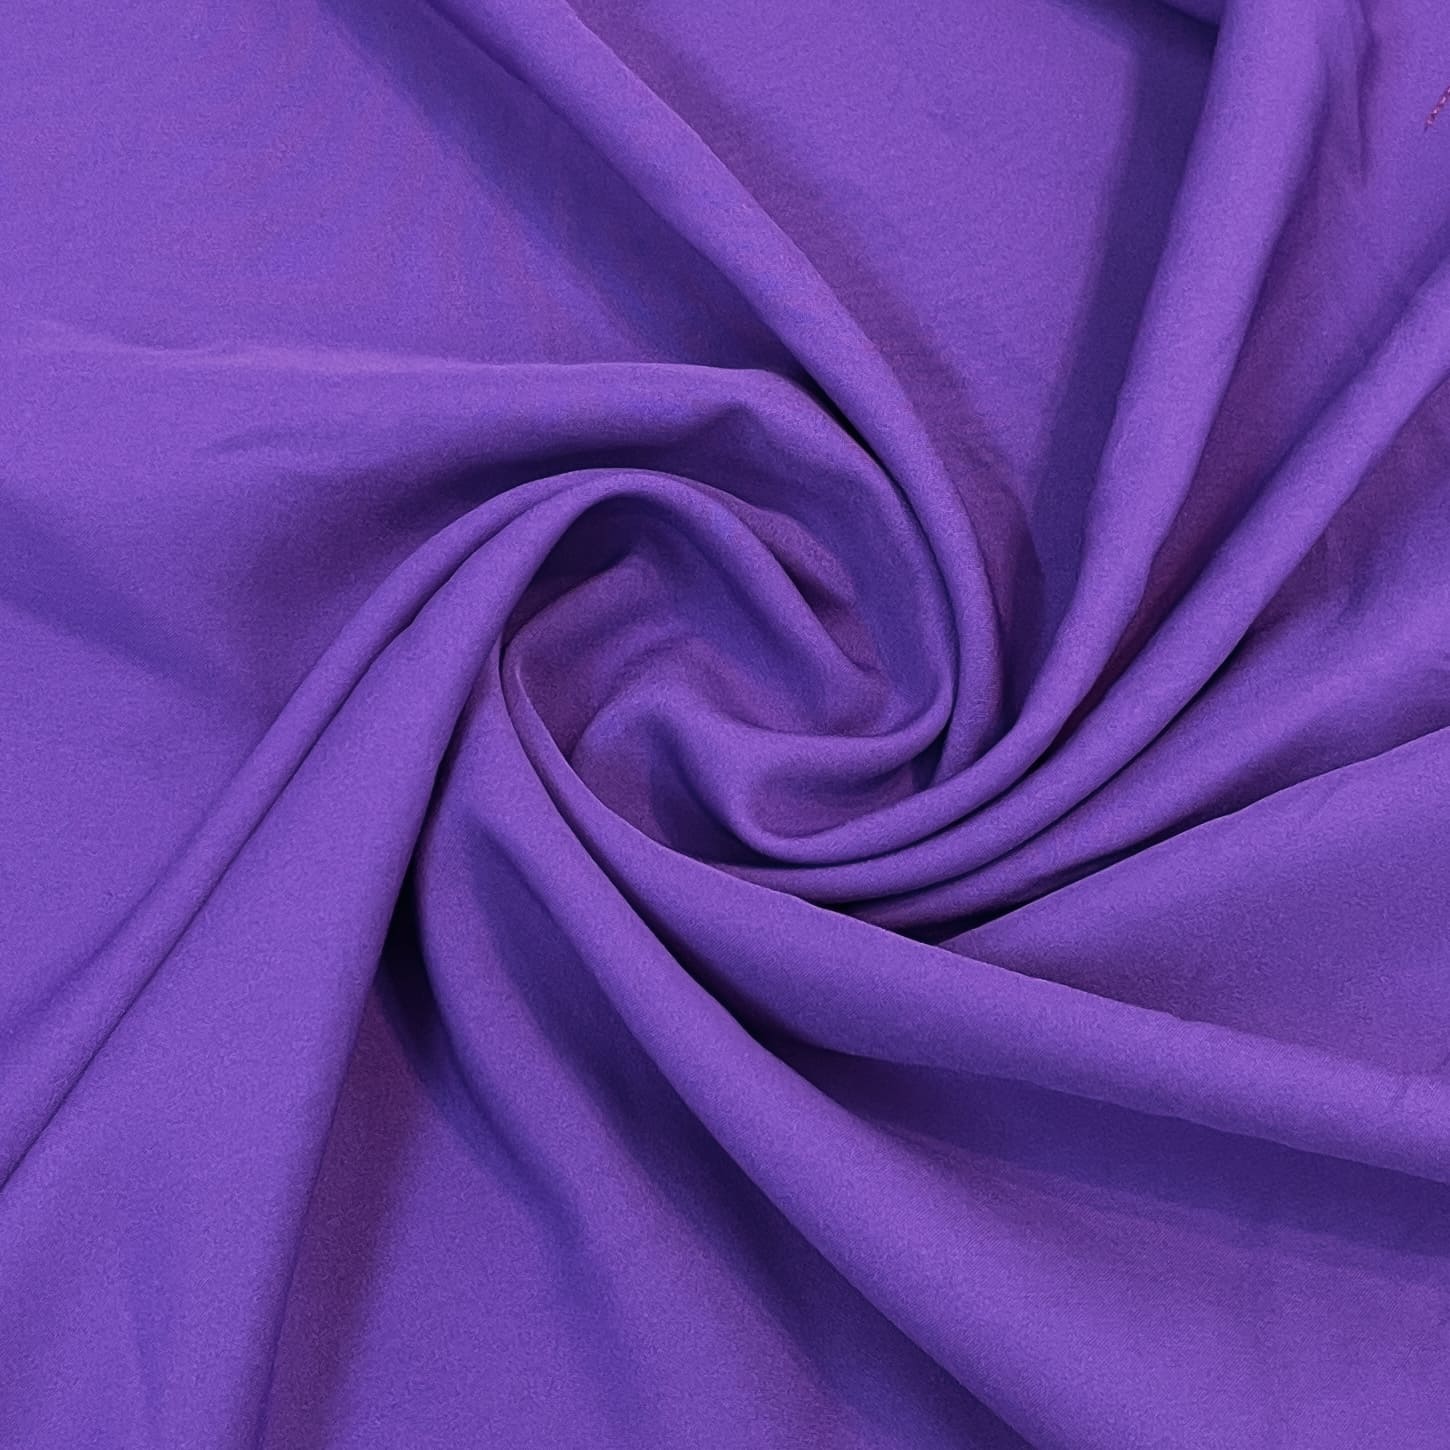  Blue Solid Malai Crepe Fabric